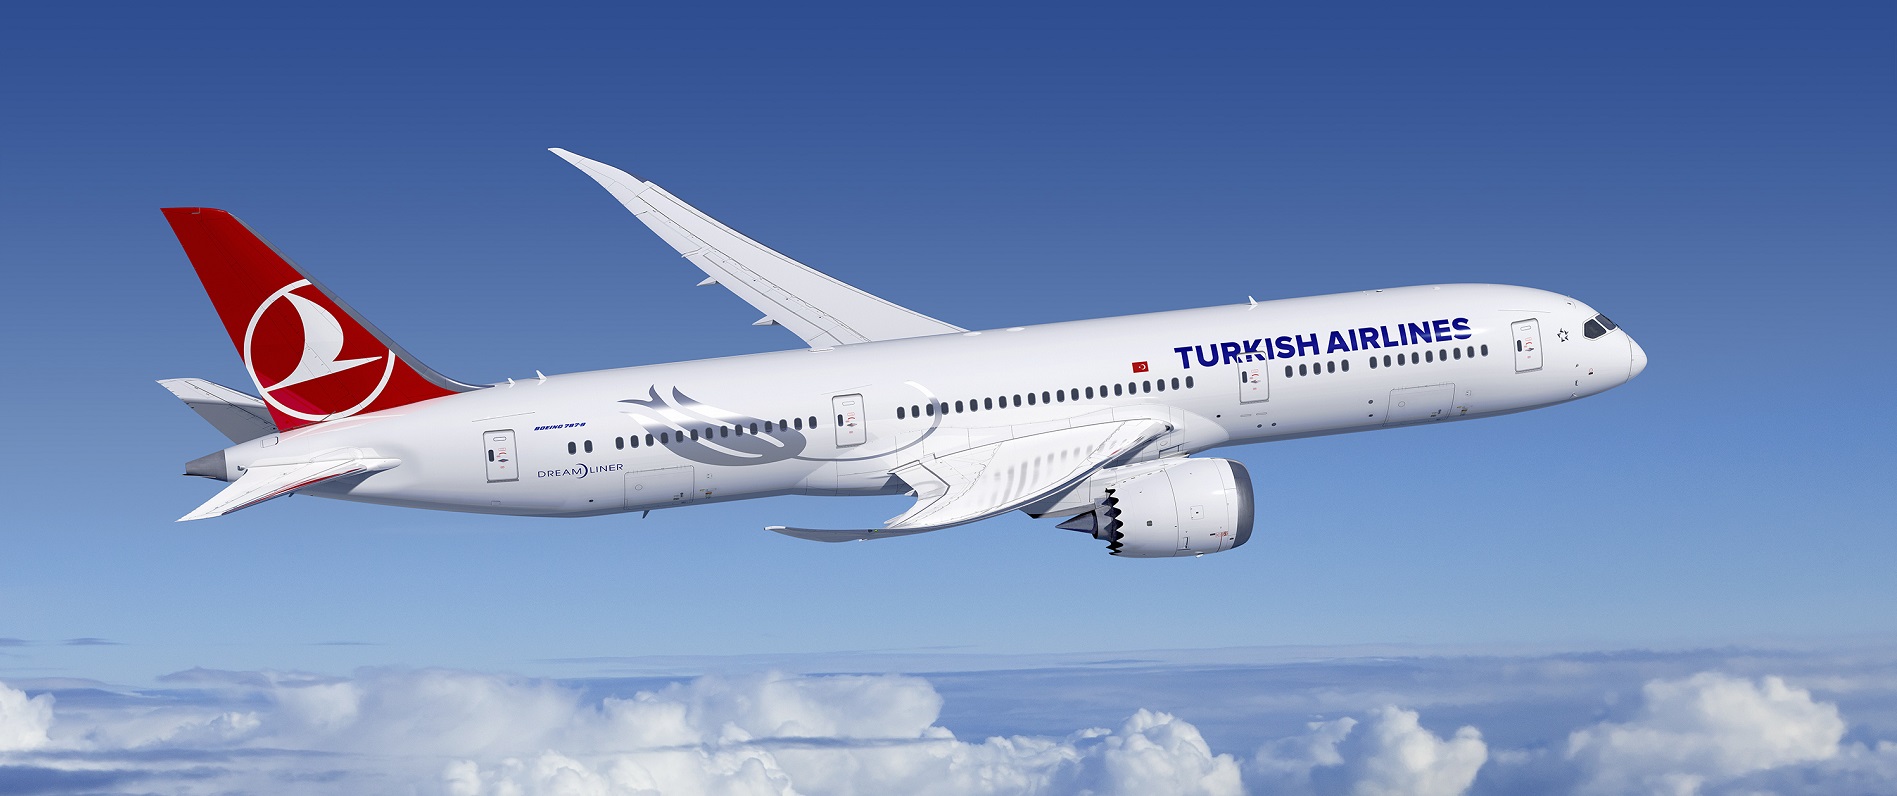 טיסות טורקיש איירליינס למבחר יעדים 